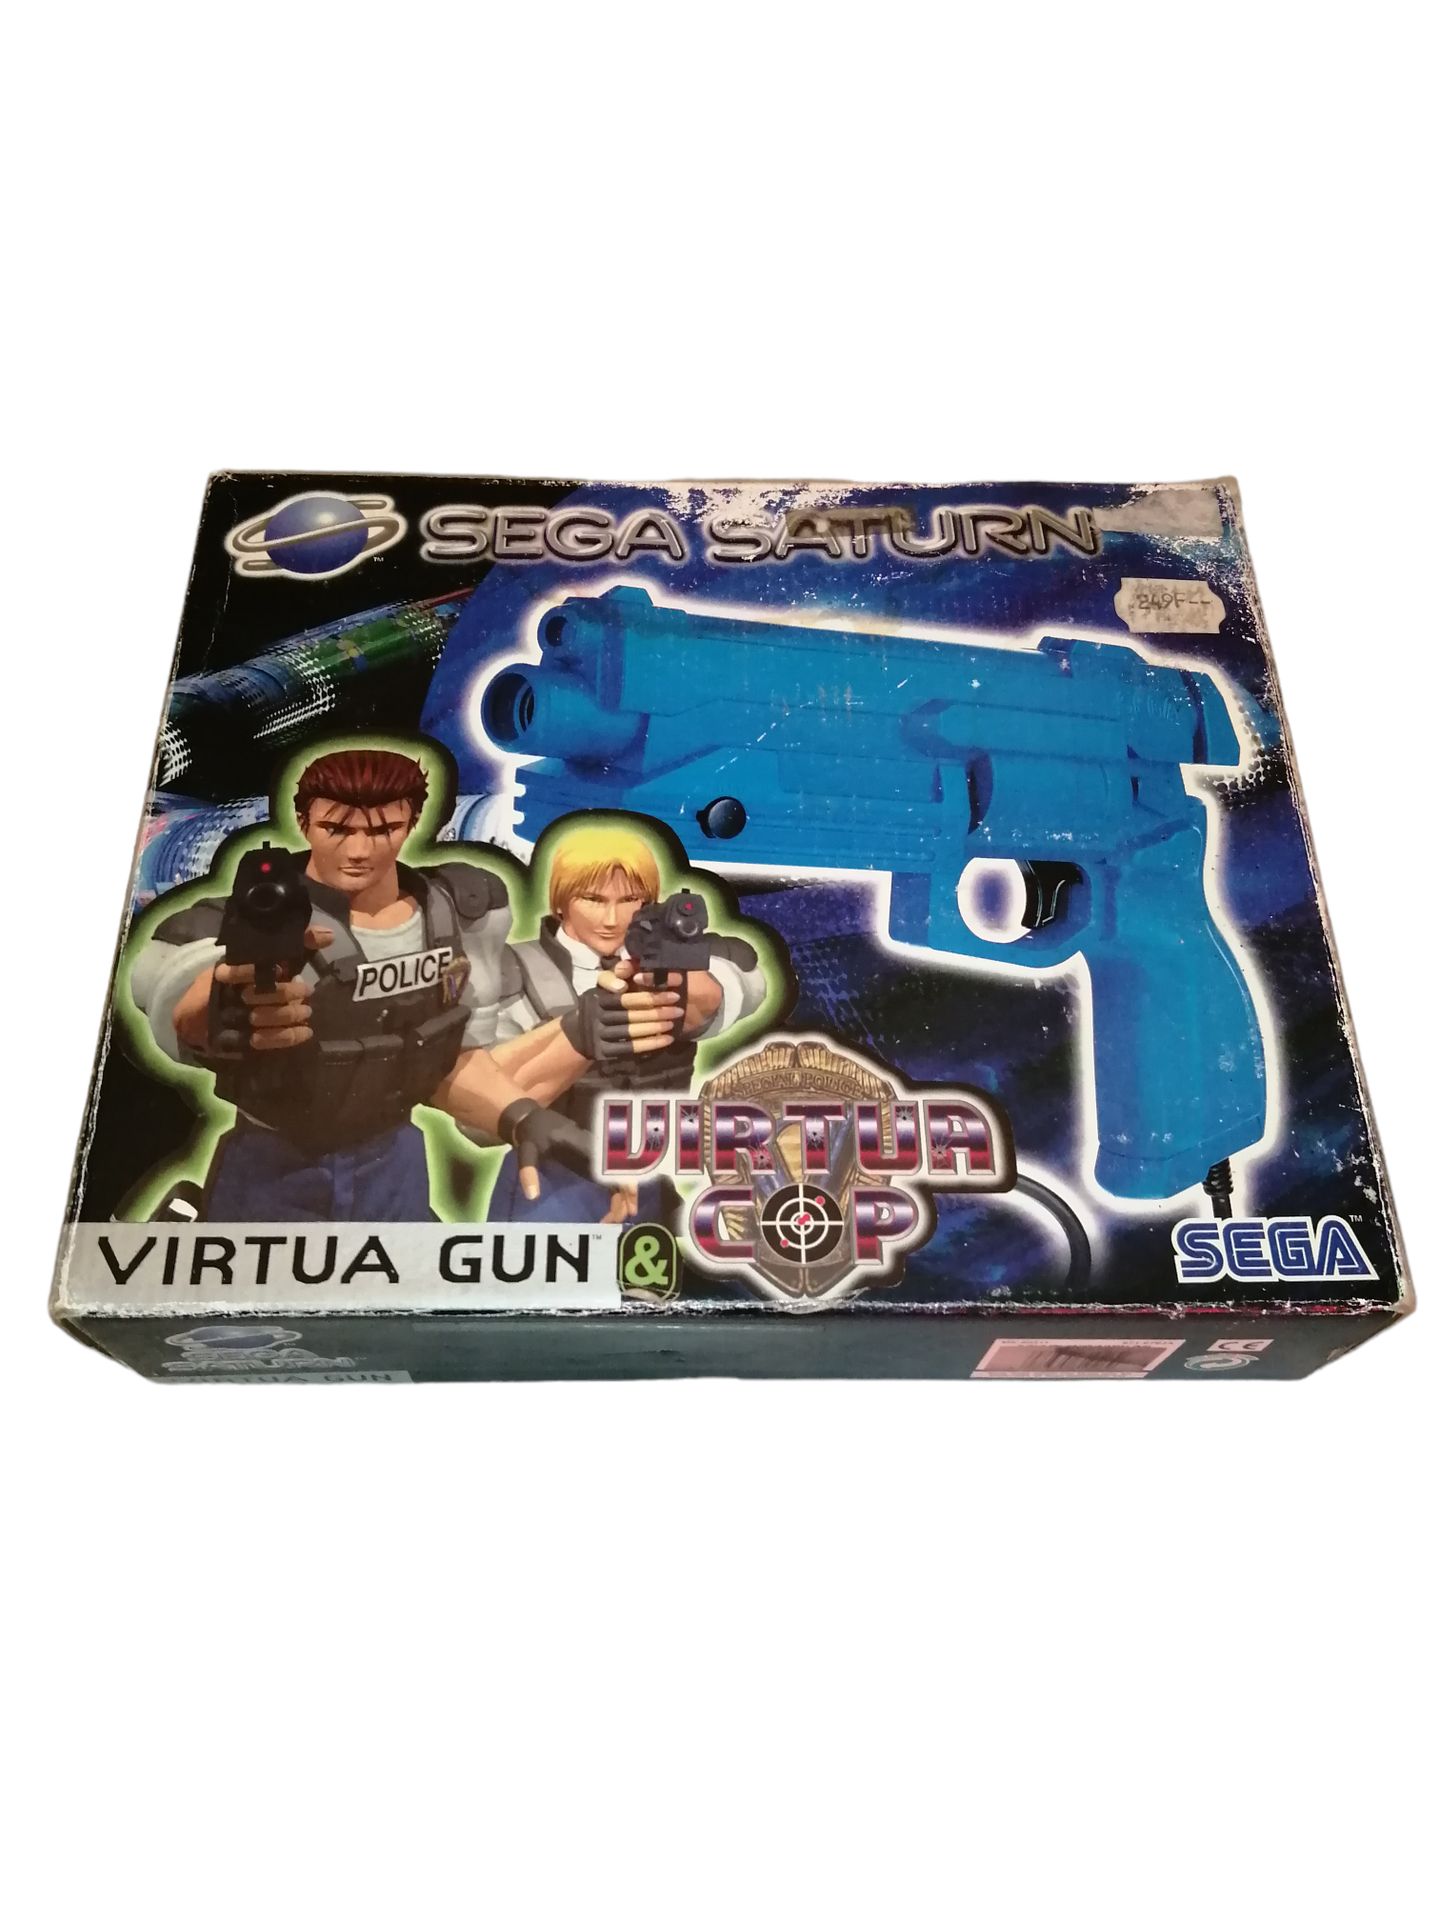 Null SEGA SATURN - Virtua Gun Virtua Cop.
Box in poor condition,
Clean interior,&hellip;